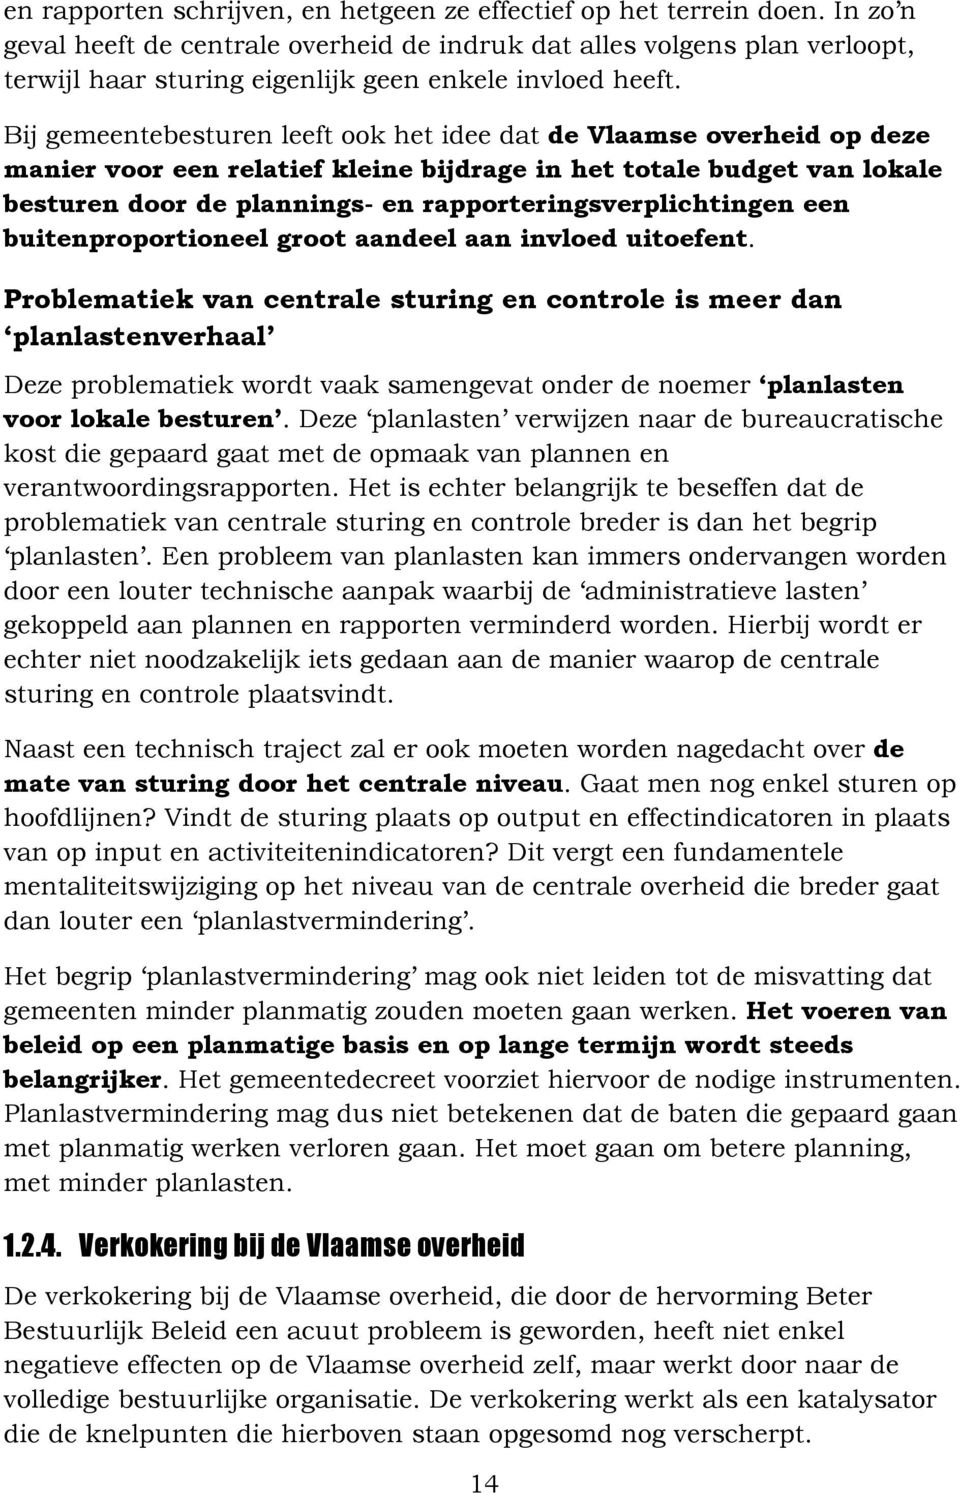 Bij gemeentebesturen leeft ook het idee dat de Vlaamse overheid op deze manier voor een relatief kleine bijdrage in het totale budget lokale besturen door de plannings- en rapporteringsverplichtingen